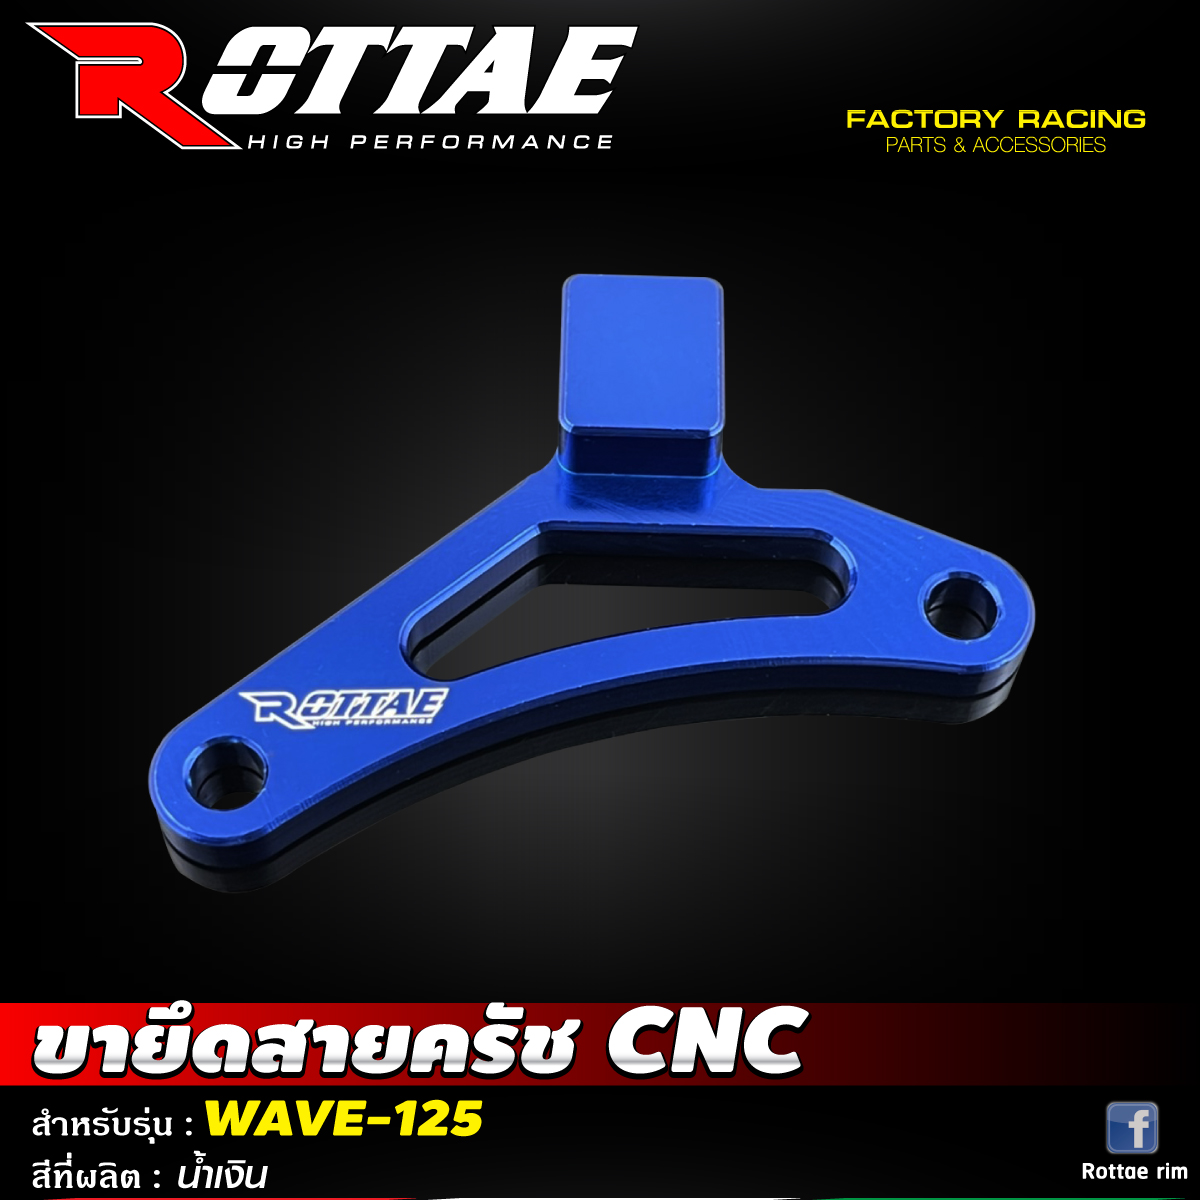 ขายึดสายครัช CNC #WAVE-125 ROTTAE สี น้ำเงิน